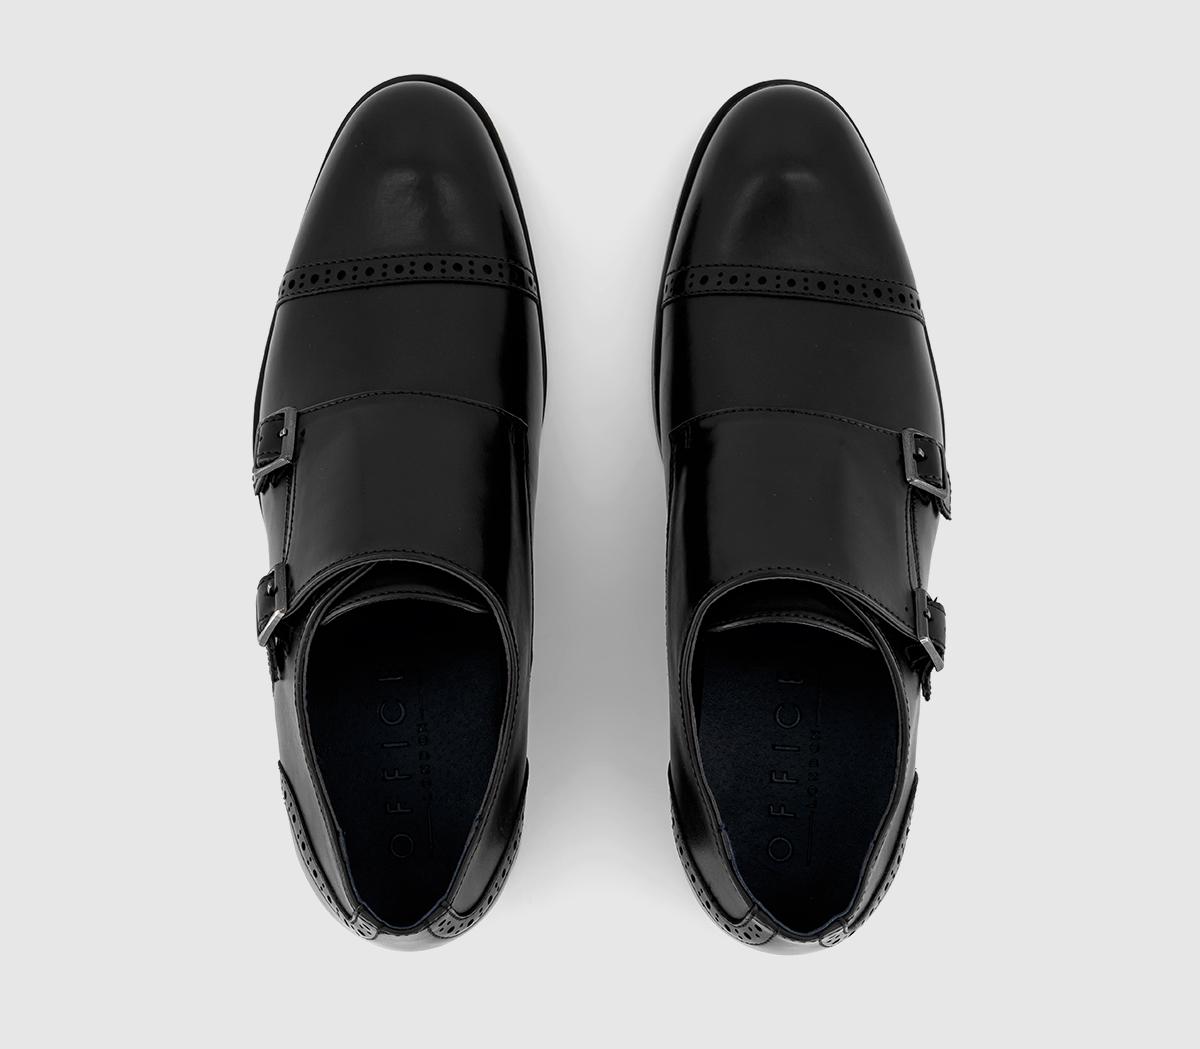 OFFICE Markham Toecap Double Monk Strap Shoes Black - Men’s Smart Shoes